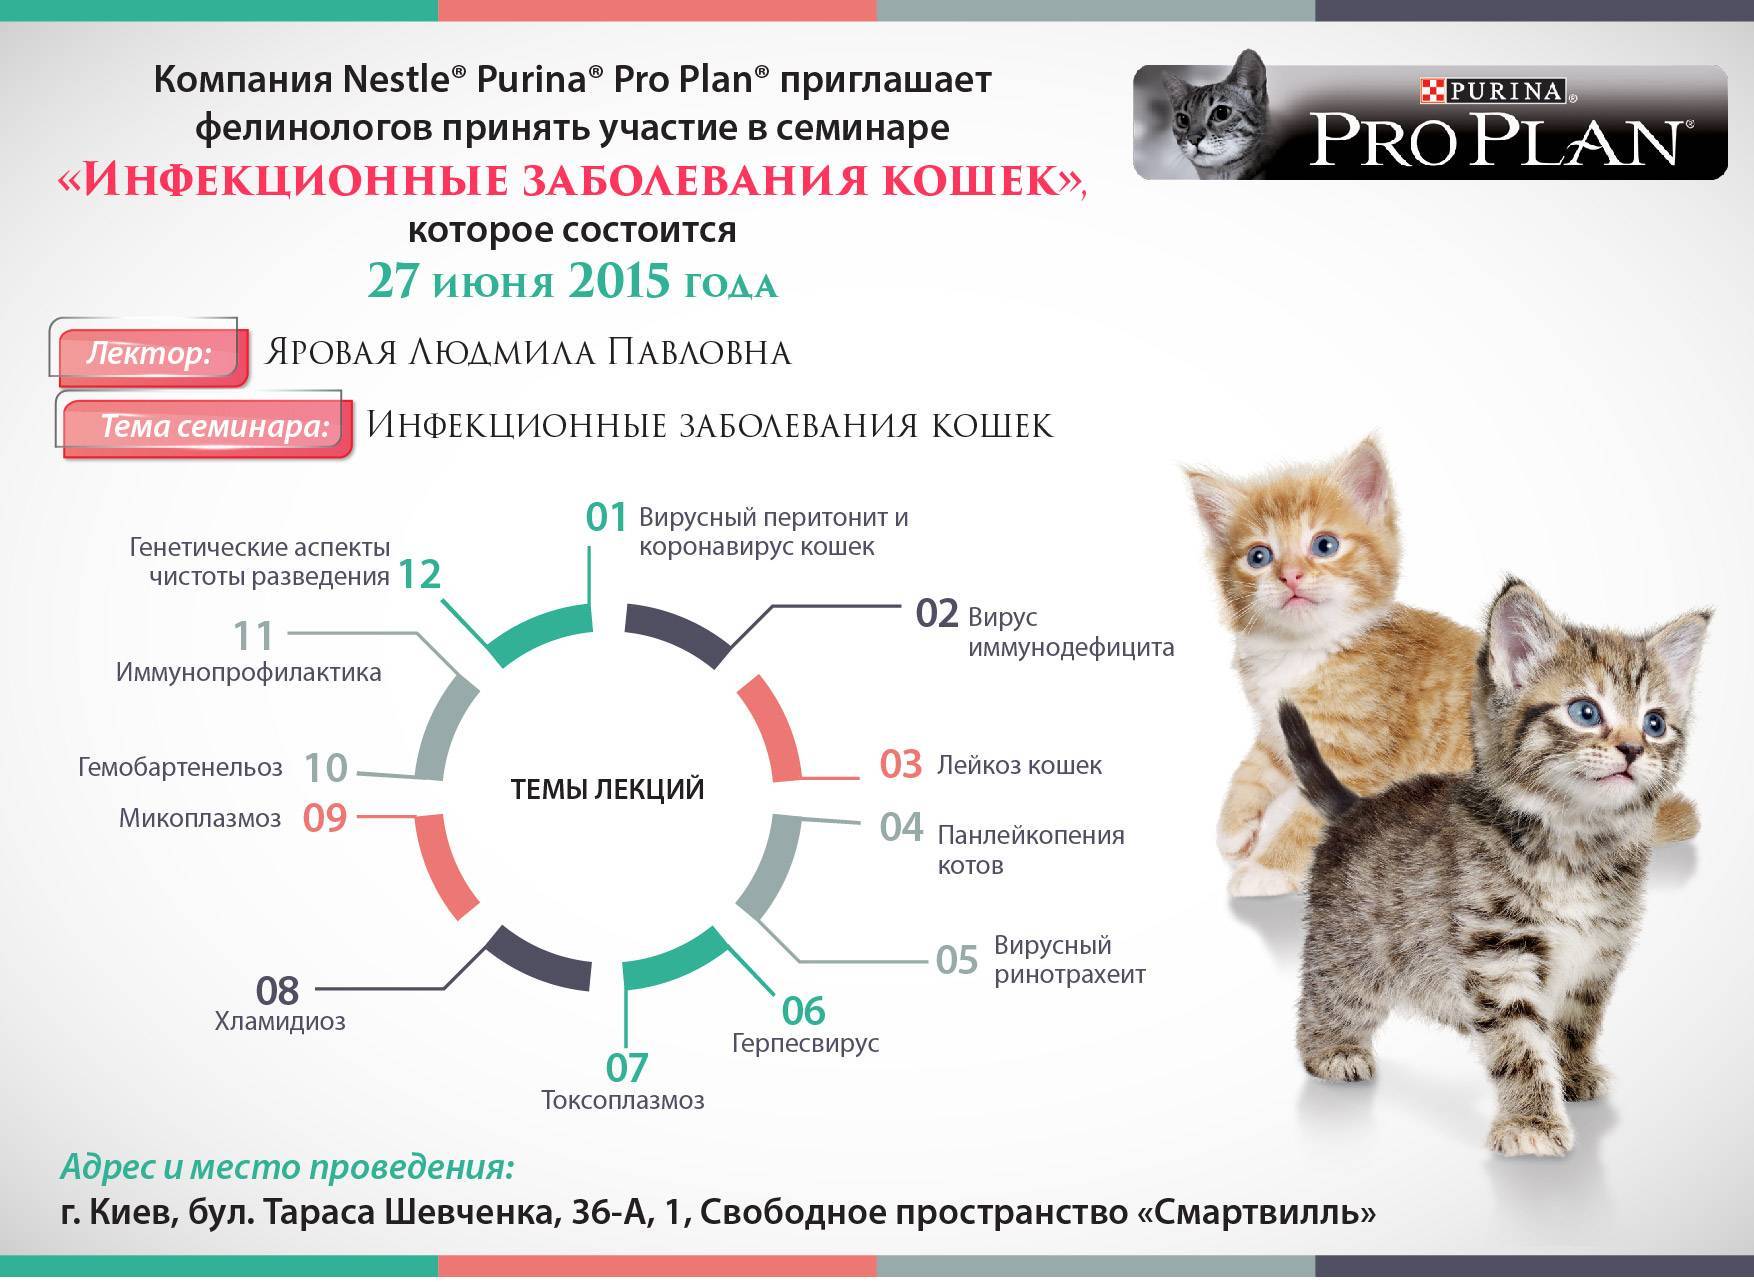 Кальцивироз у кошек – описание, симптомы, лечение, профилактика